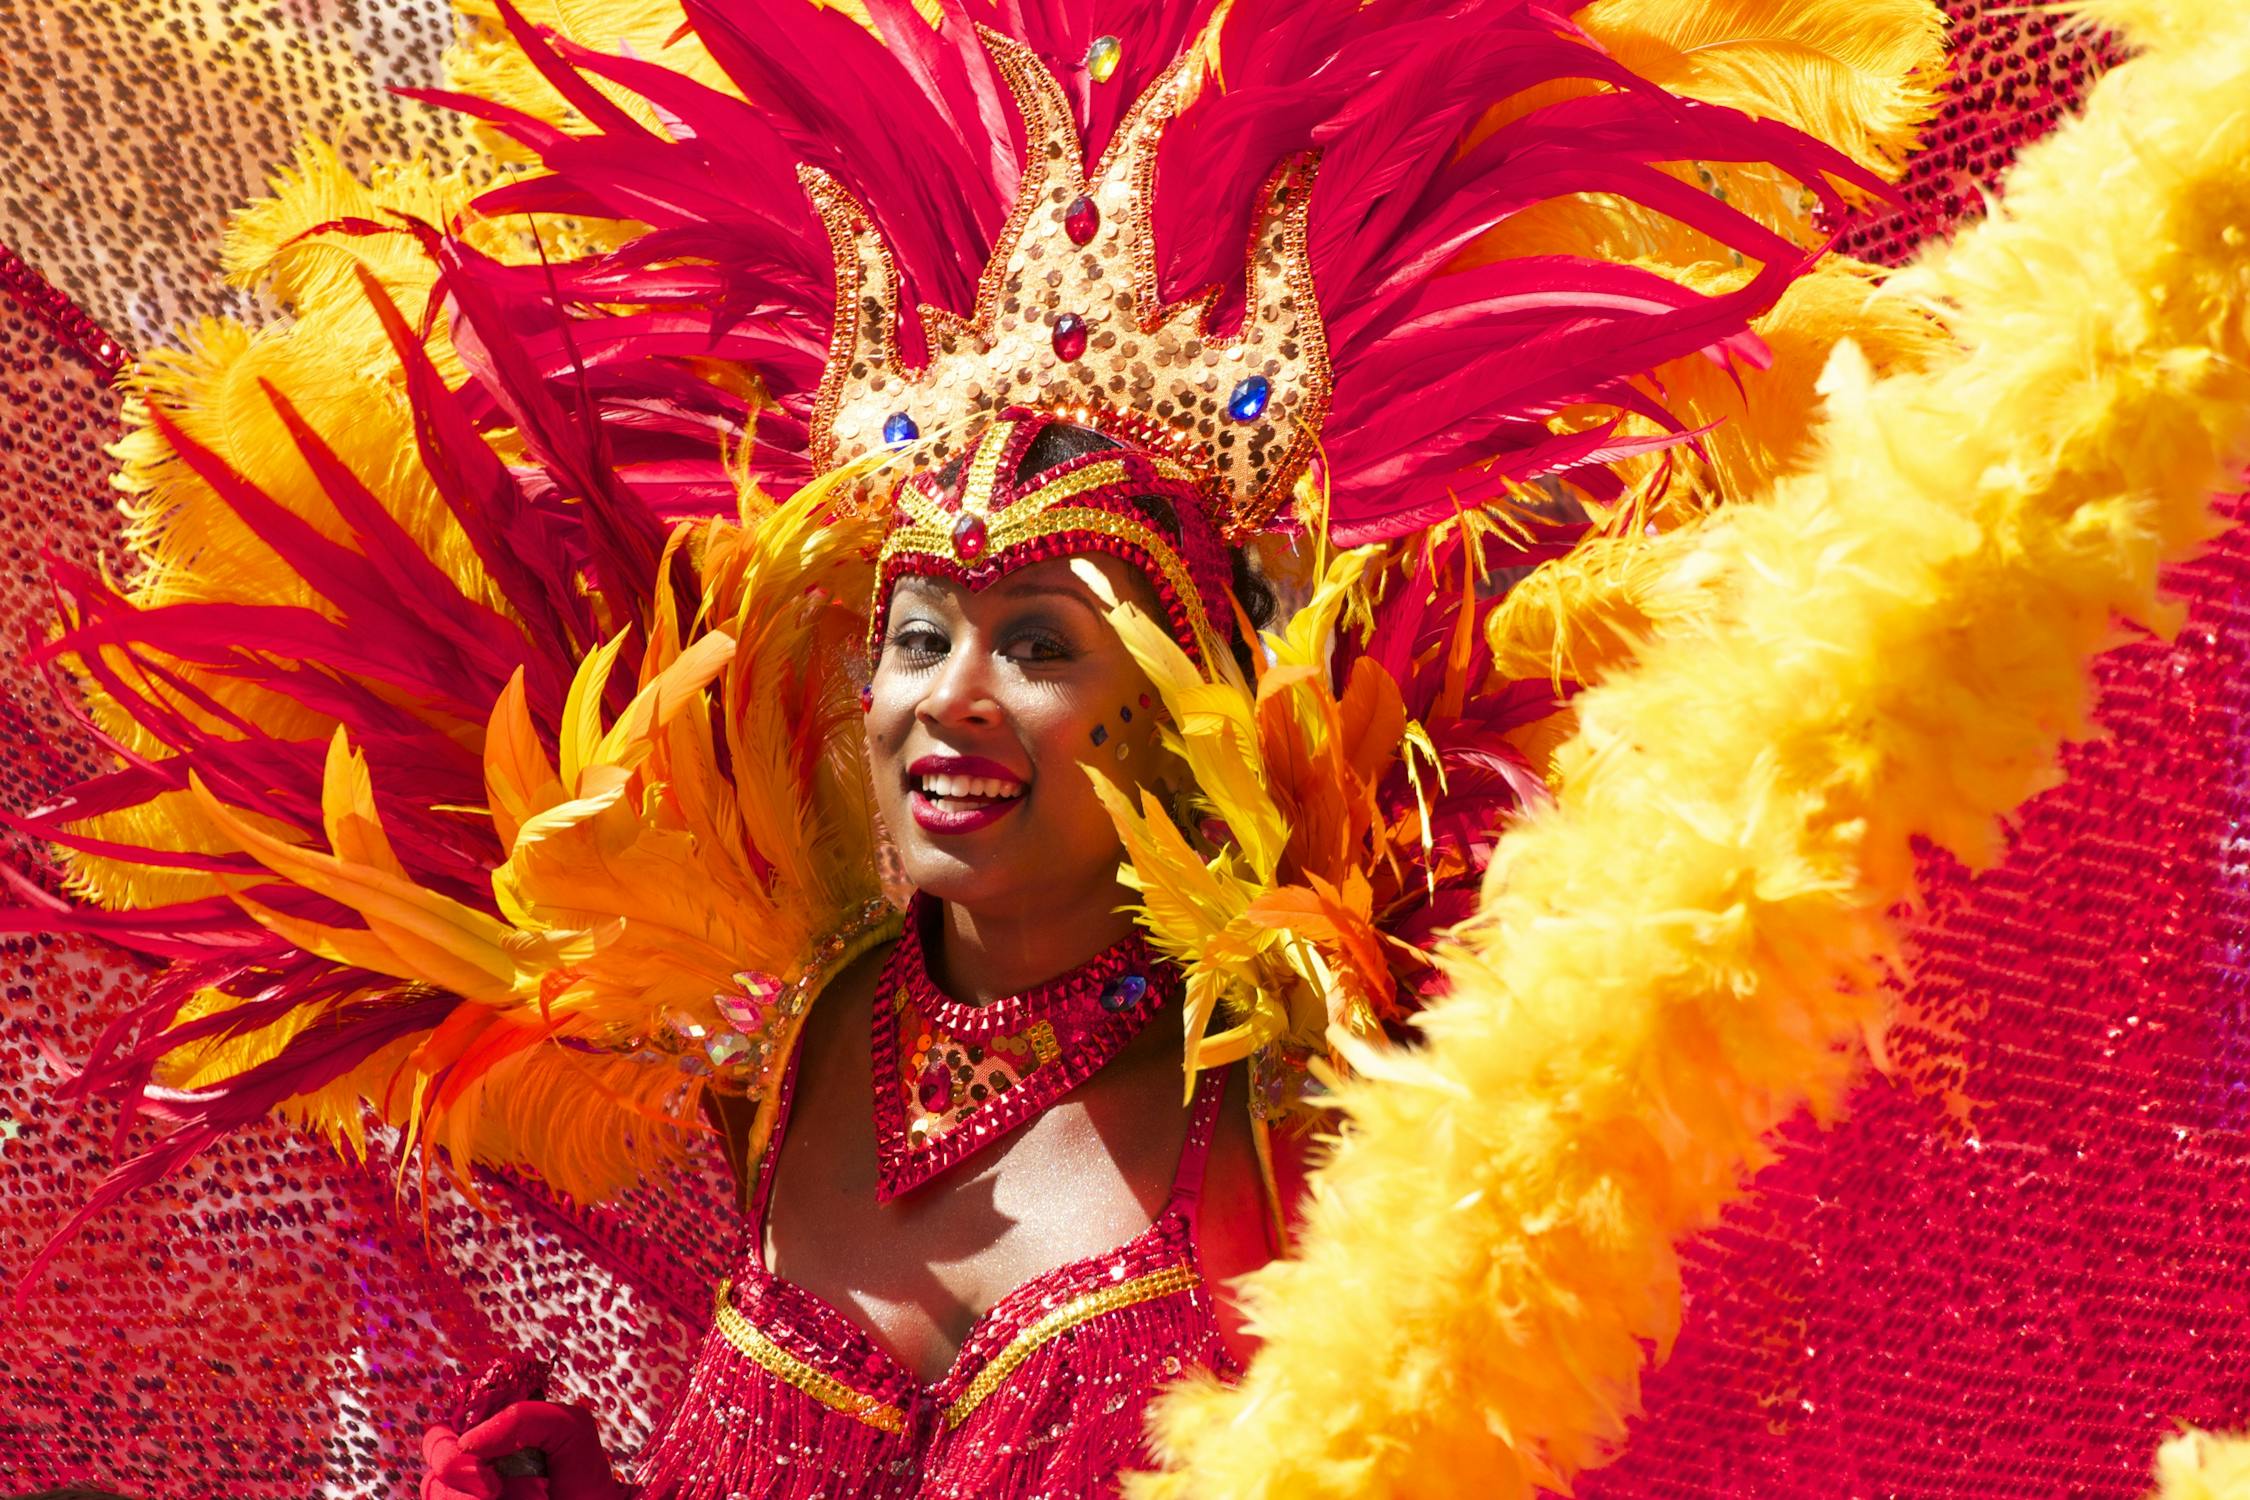 A Rio carnival dances - Rio carnival is unique and world famous.